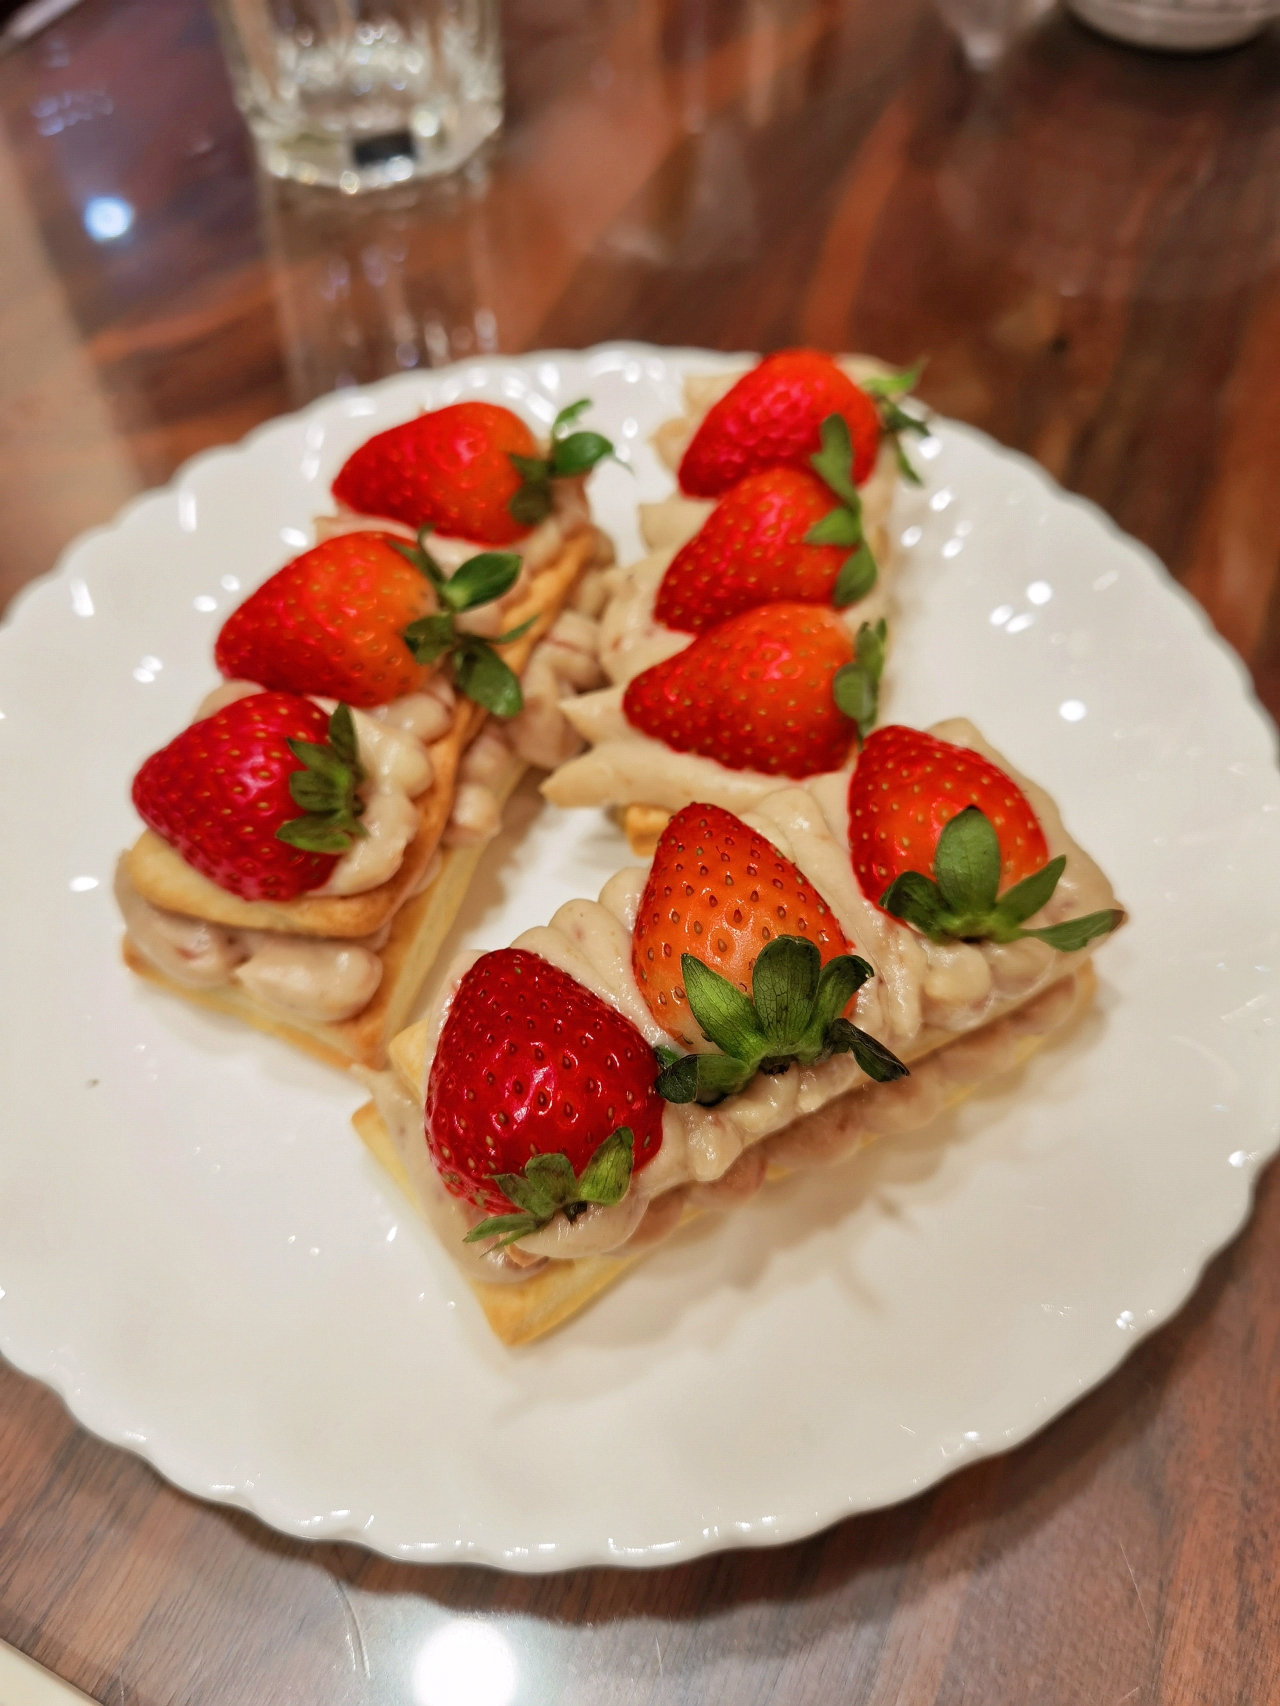 浪漫法式甜品|草莓🍓拿破仑千层酥(手抓饼版)